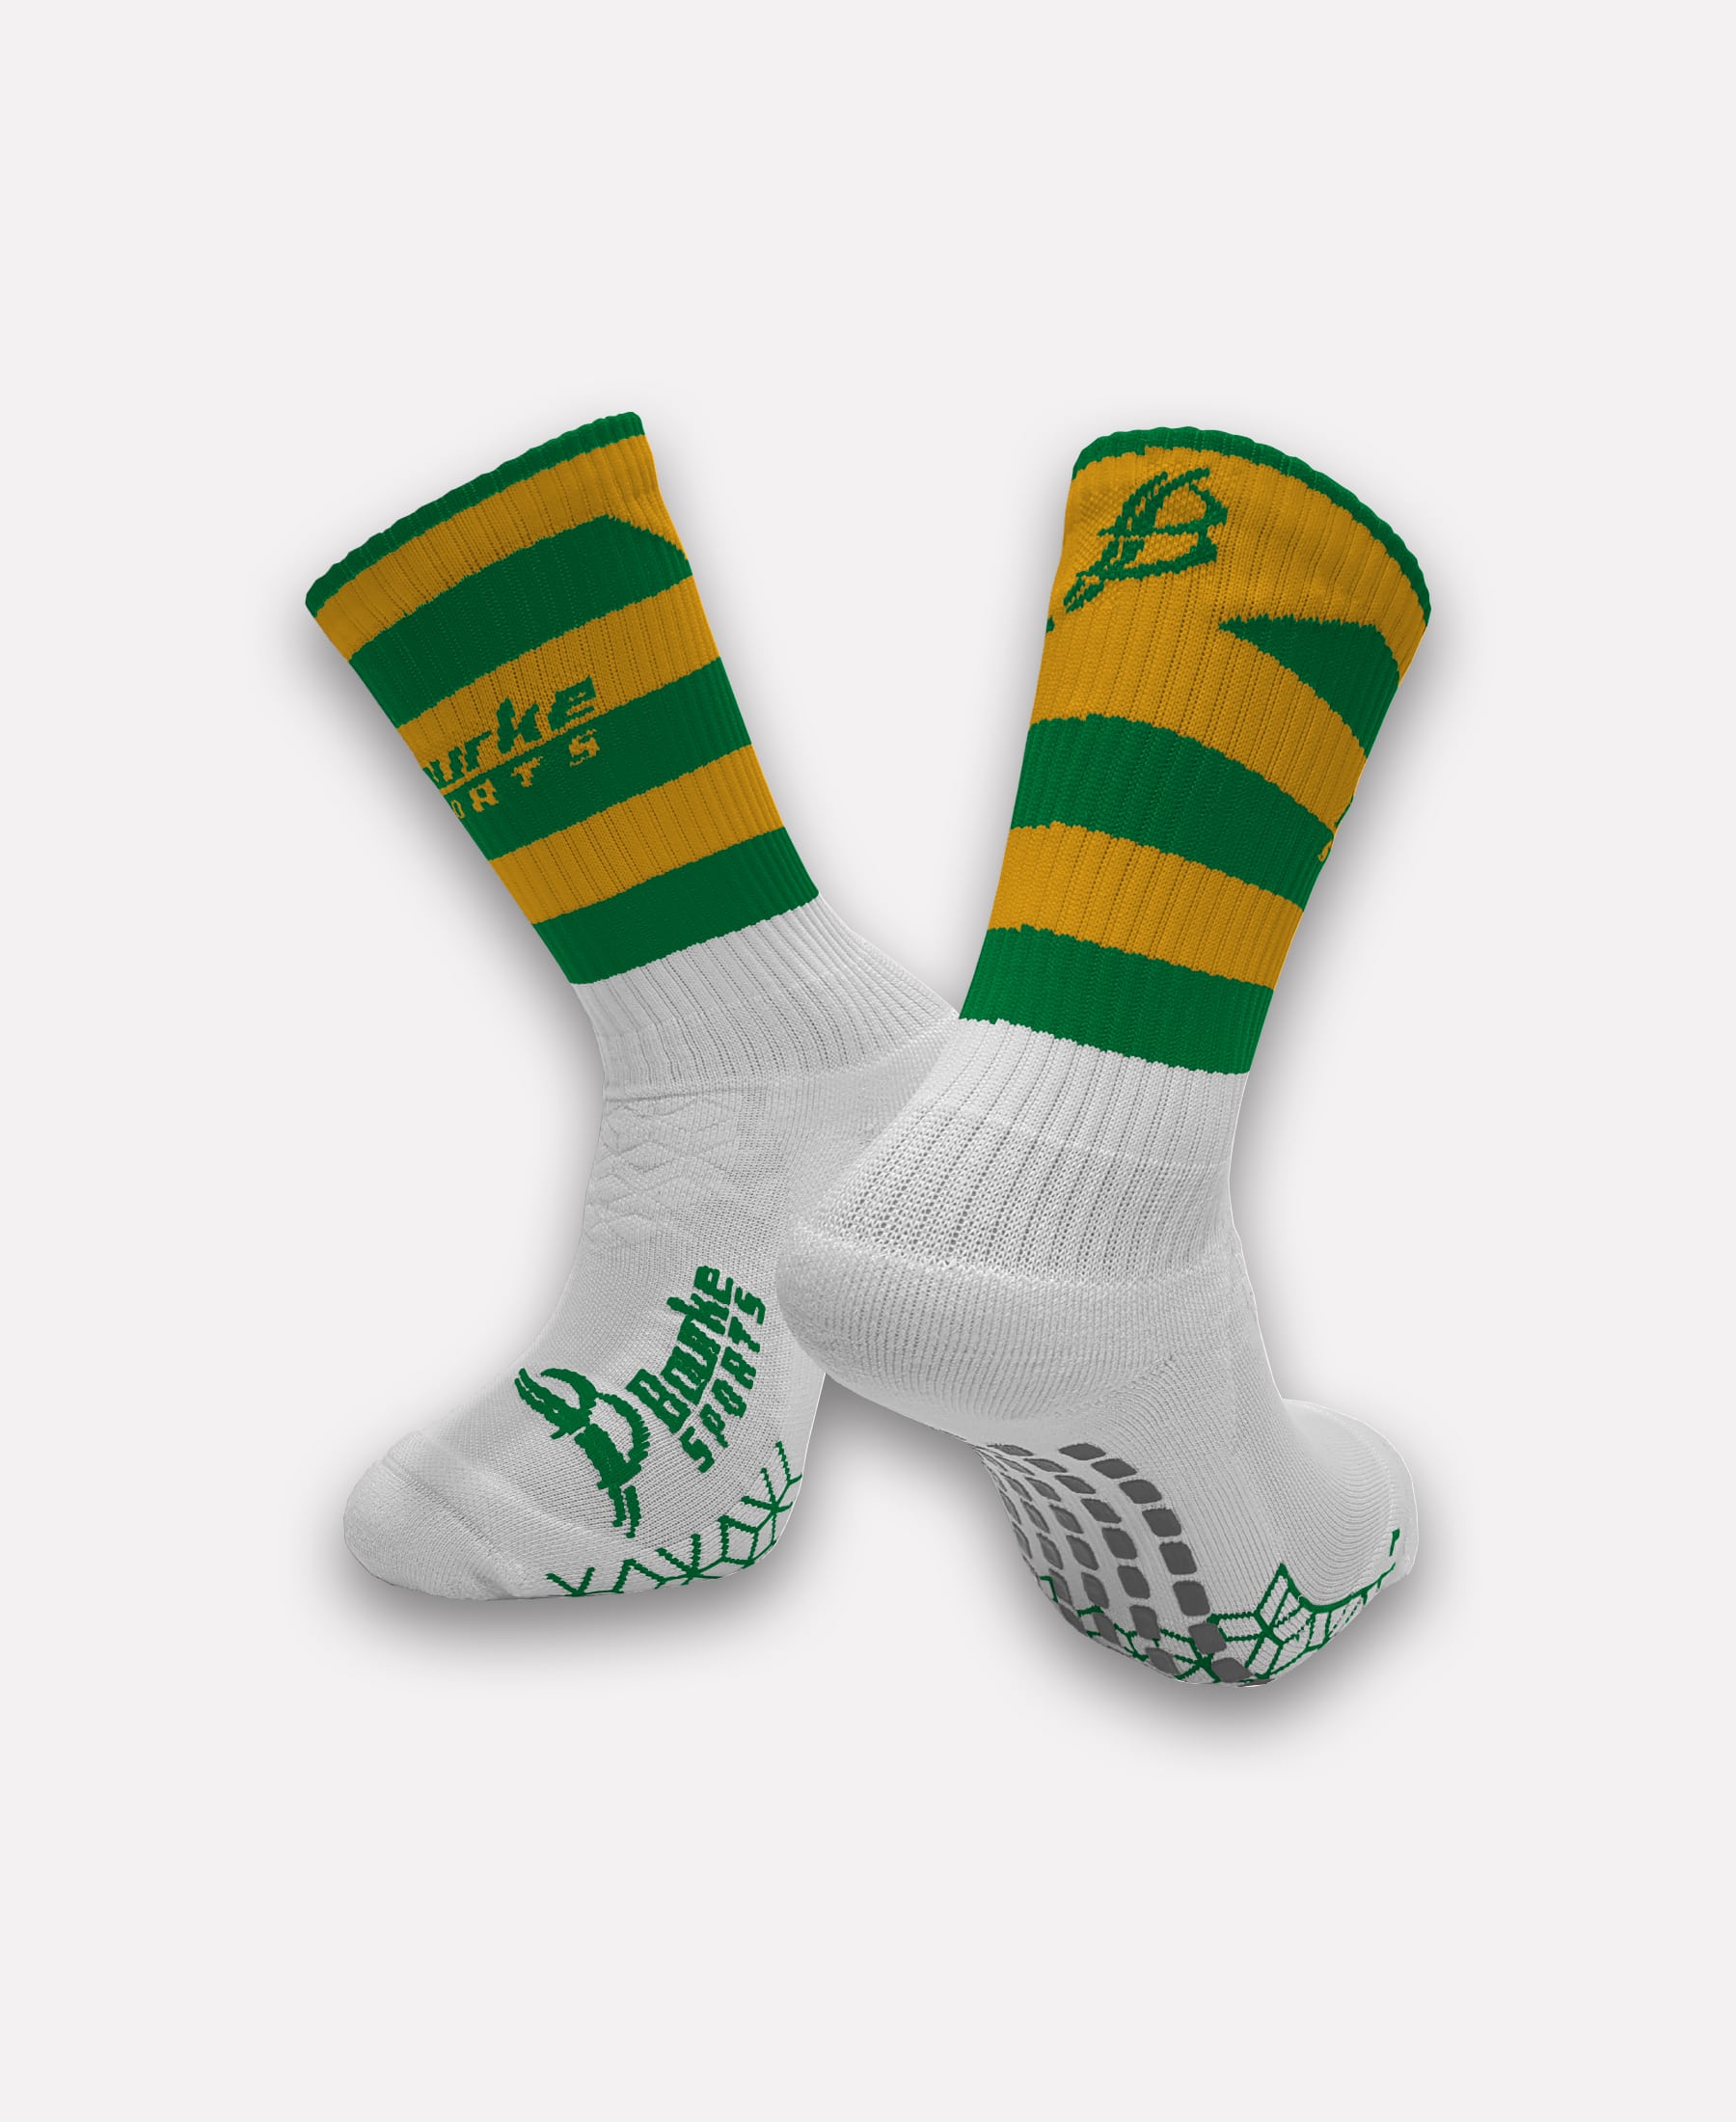 Bunscoil Phobal Feirste Miniz Socks